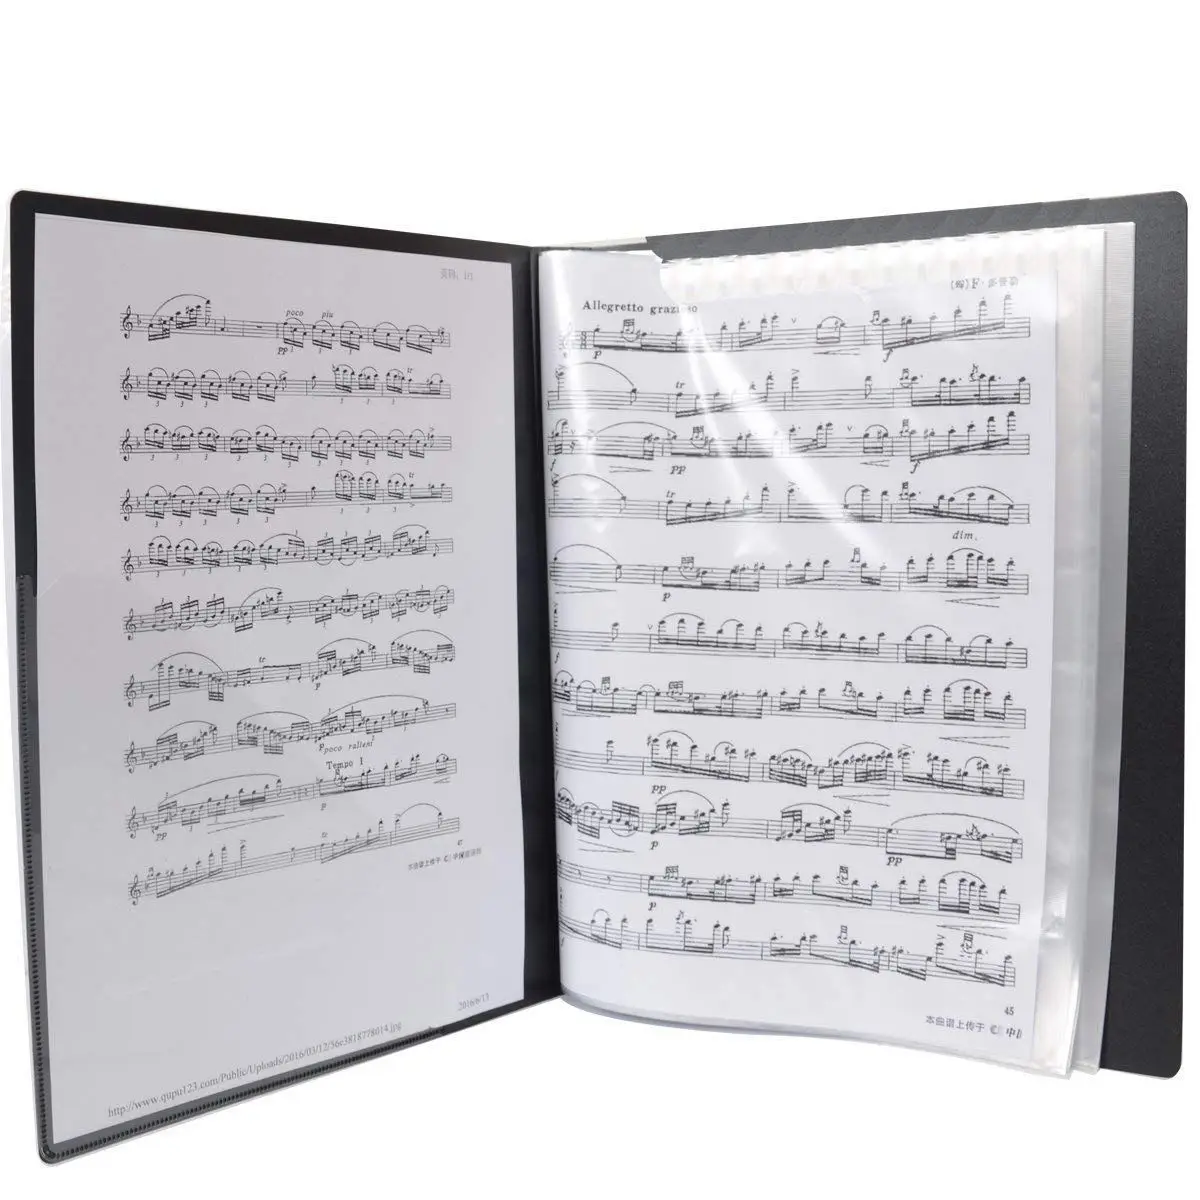 Музыкальный лист файл бумаги документов хранения Папка Держатель ПВХ. A4 размер, 40 карманов (черный)